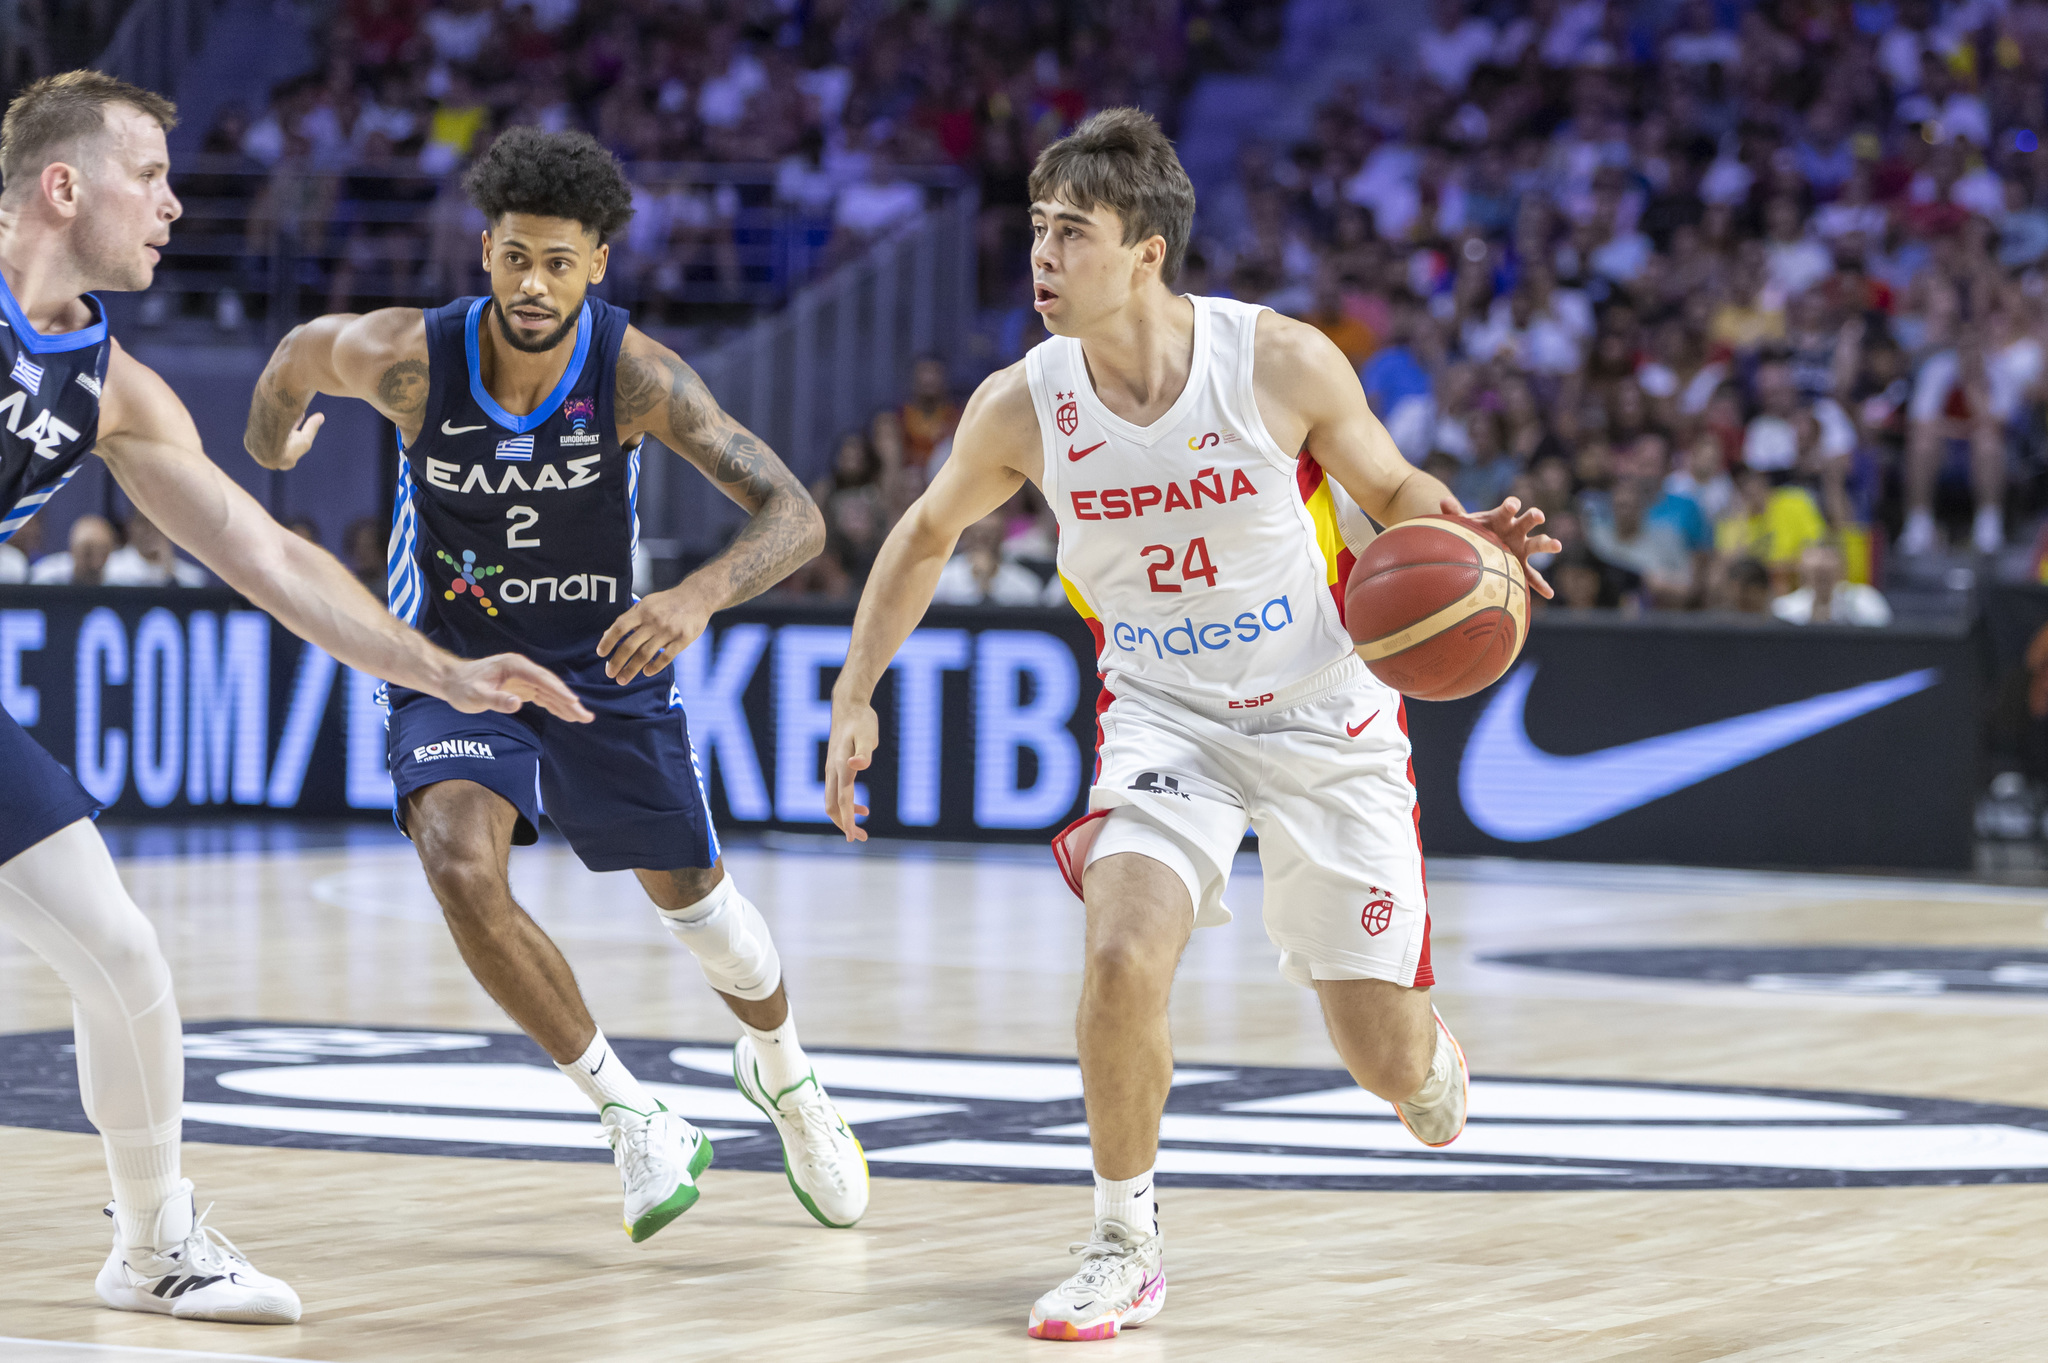 Partido de preparación del Eurobasket entre España y Grecia en el WiZink Center